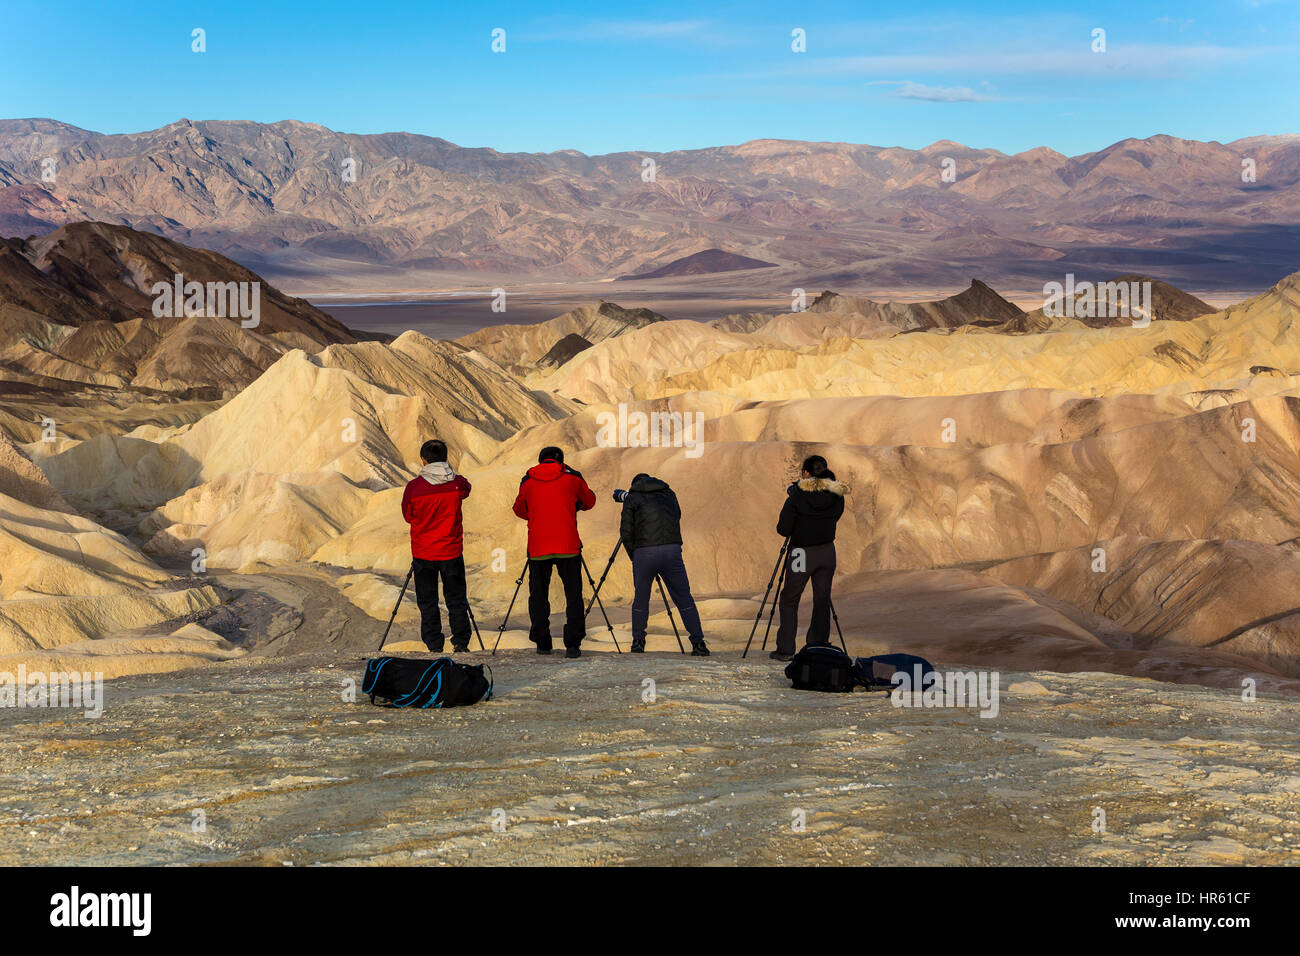 Les photographes, les touristes, Zabriskie Point Zabriskie point, Death Valley National Park, Death Valley, California, United States, Amérique du Nord Banque D'Images